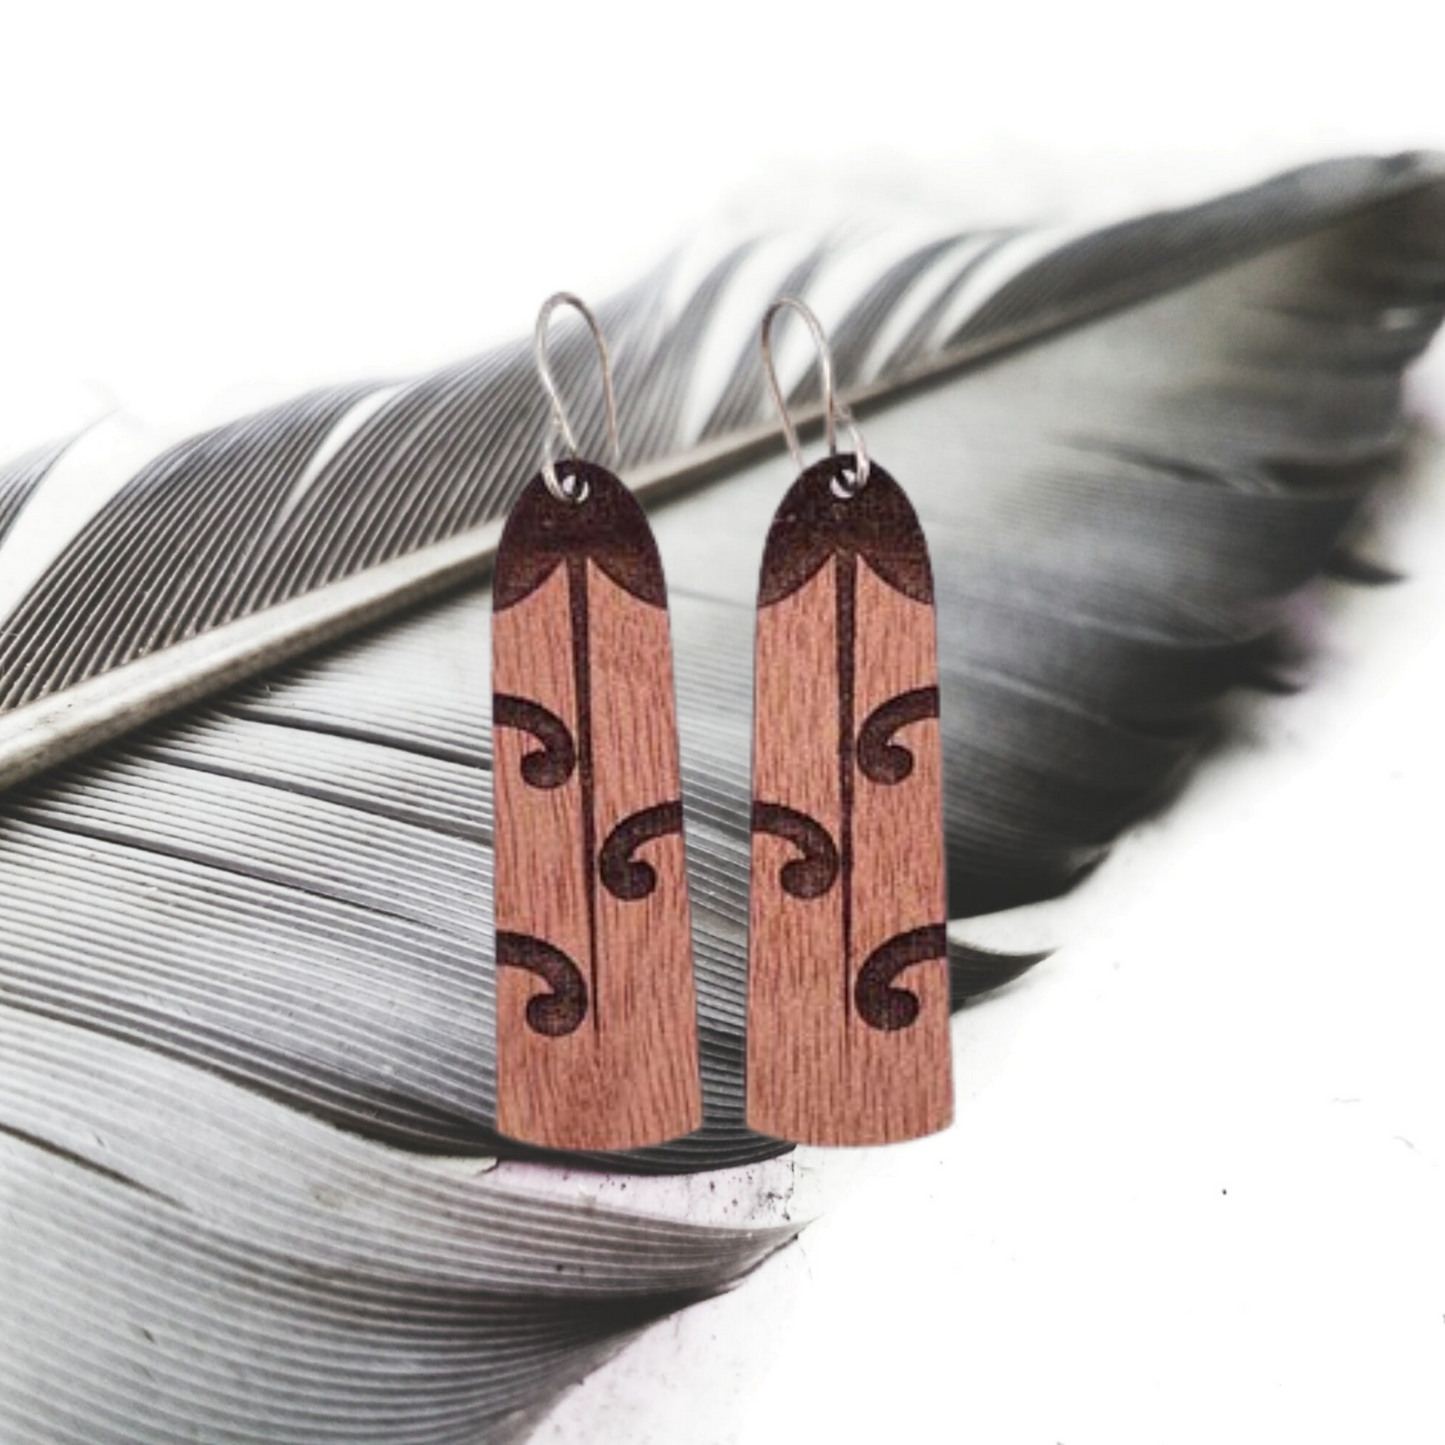 Wooden Tui Earrings